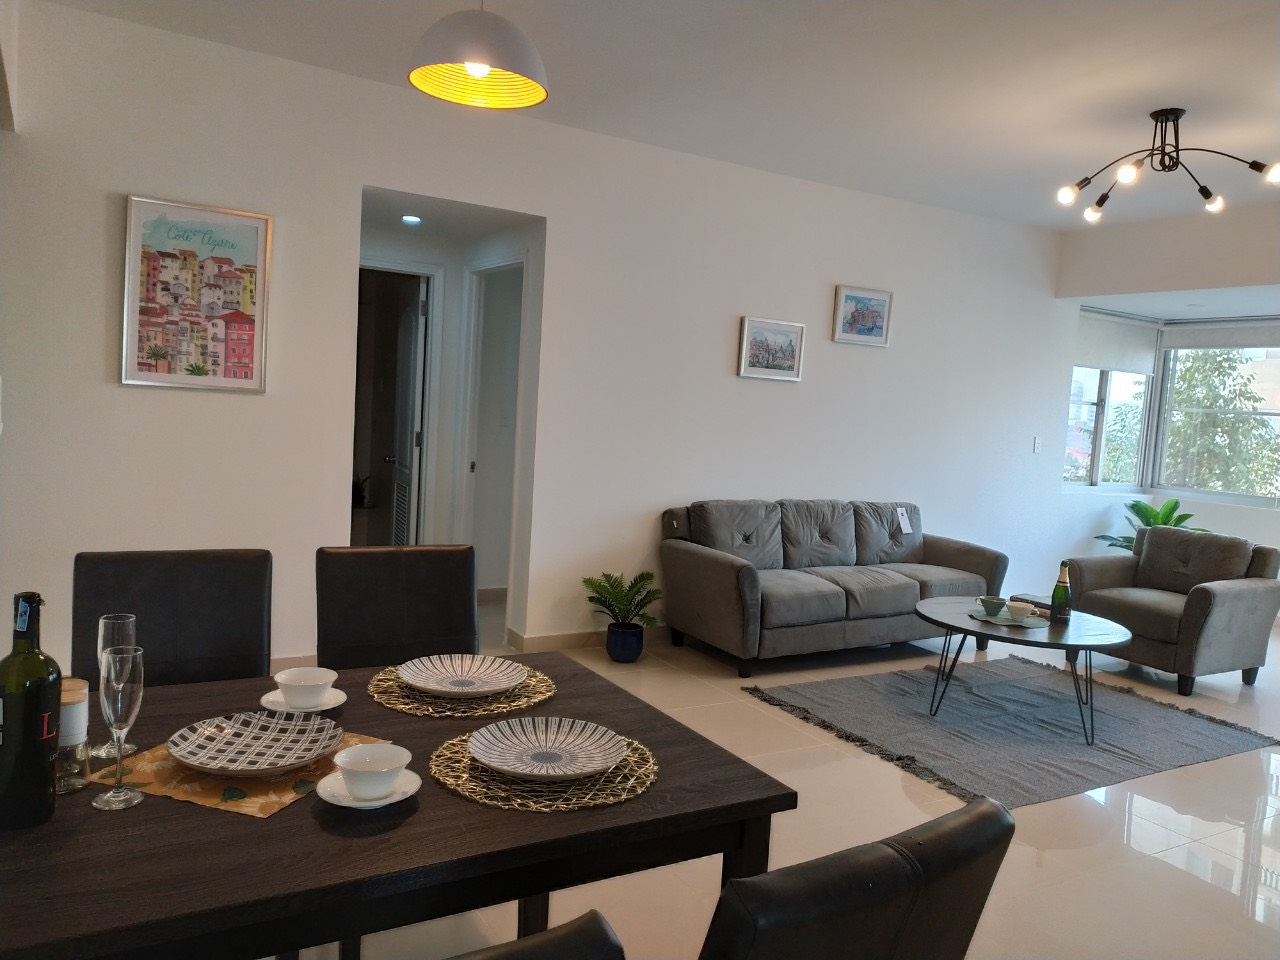 Hot căn hộ Scenic Valley 1 - Phú Mỹ Hưng đủ nội thất đẹp mới 100% cho thuê chỉ 15.5 triệu/tháng . Lh  : 0906385299 ( em Hà )